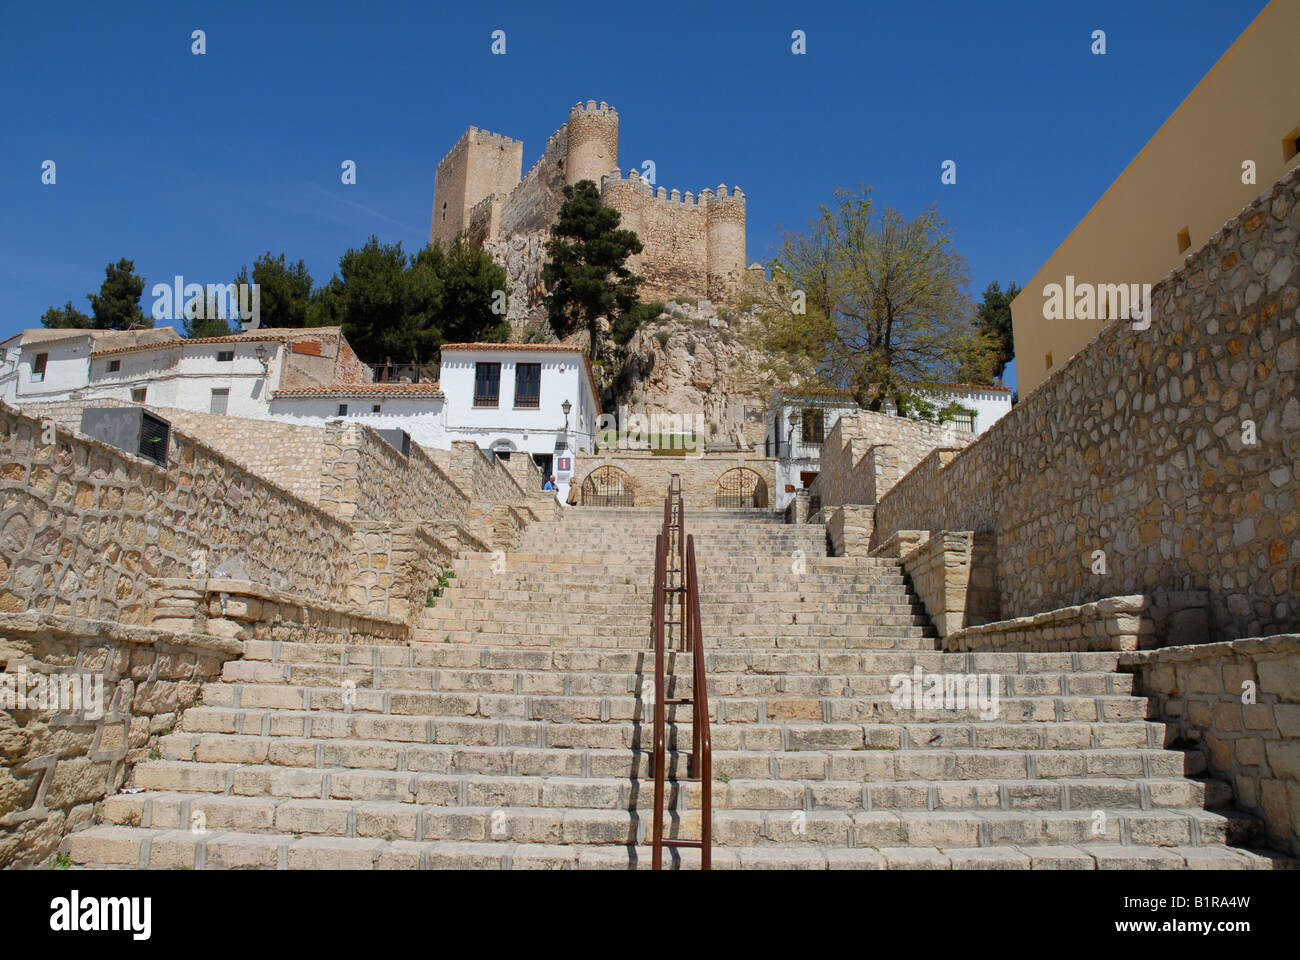 Tourist Information Office & Castle, Almansa, Albacete Province, Castile-La-Mancha, Spain Stock Photo